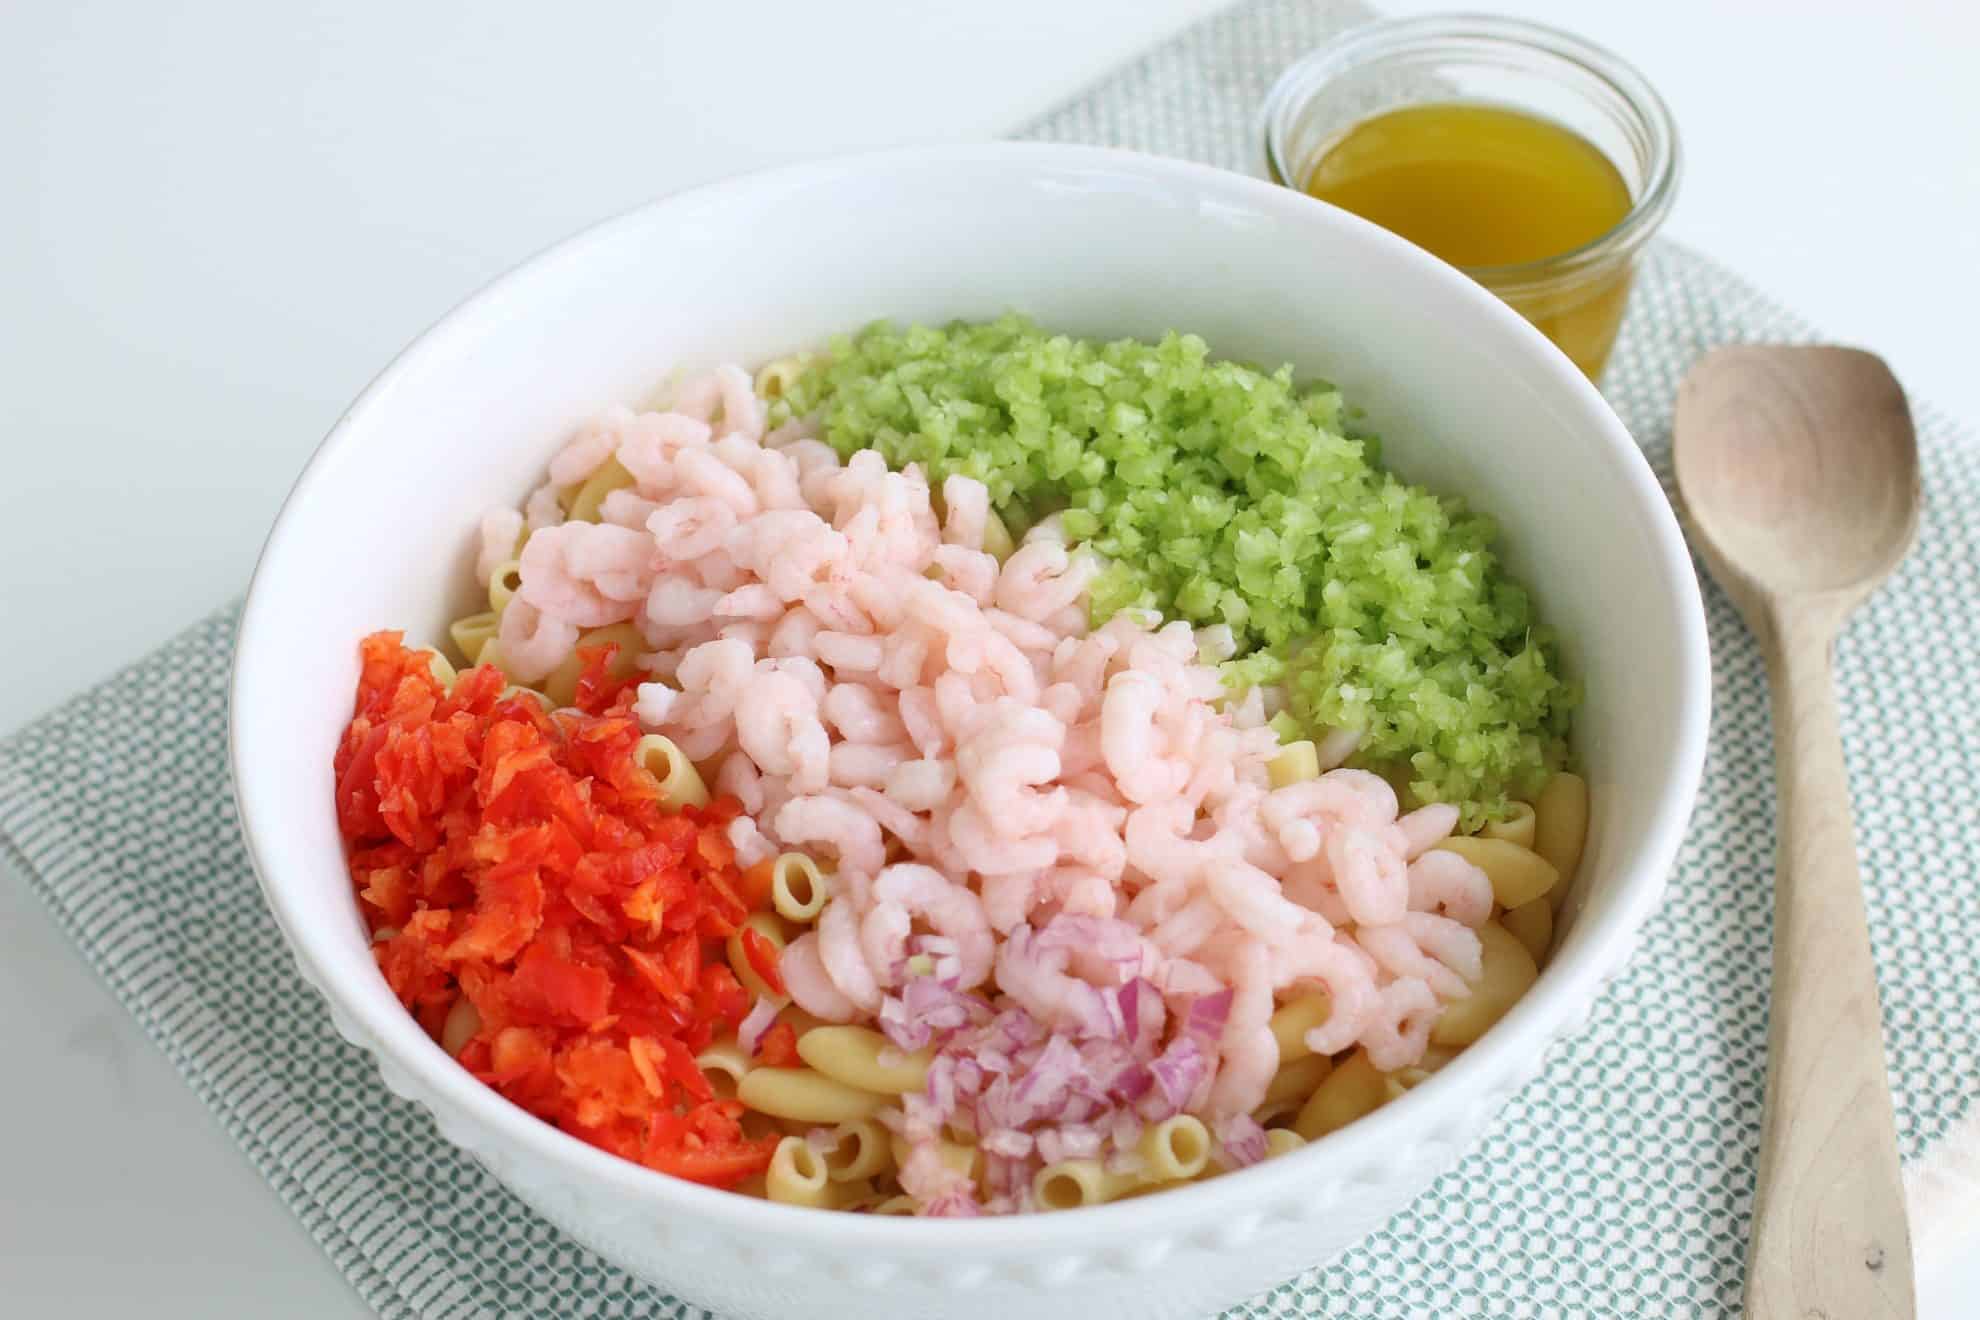 ingredients for shrimp salad 